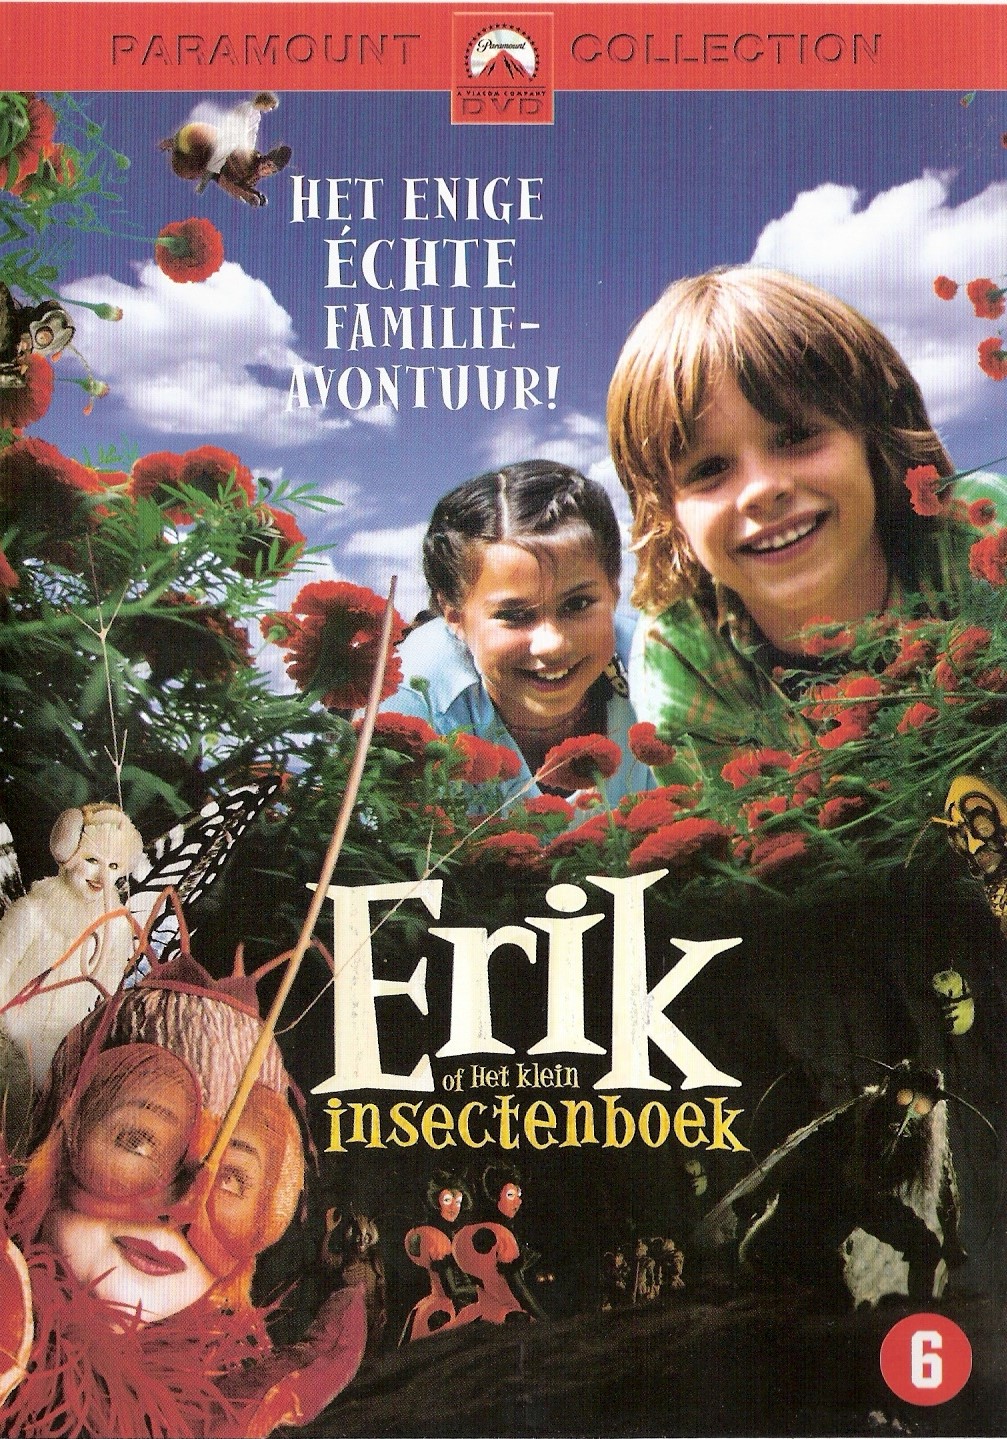 Erik of het klein insectenboek (2004) (DVD5)